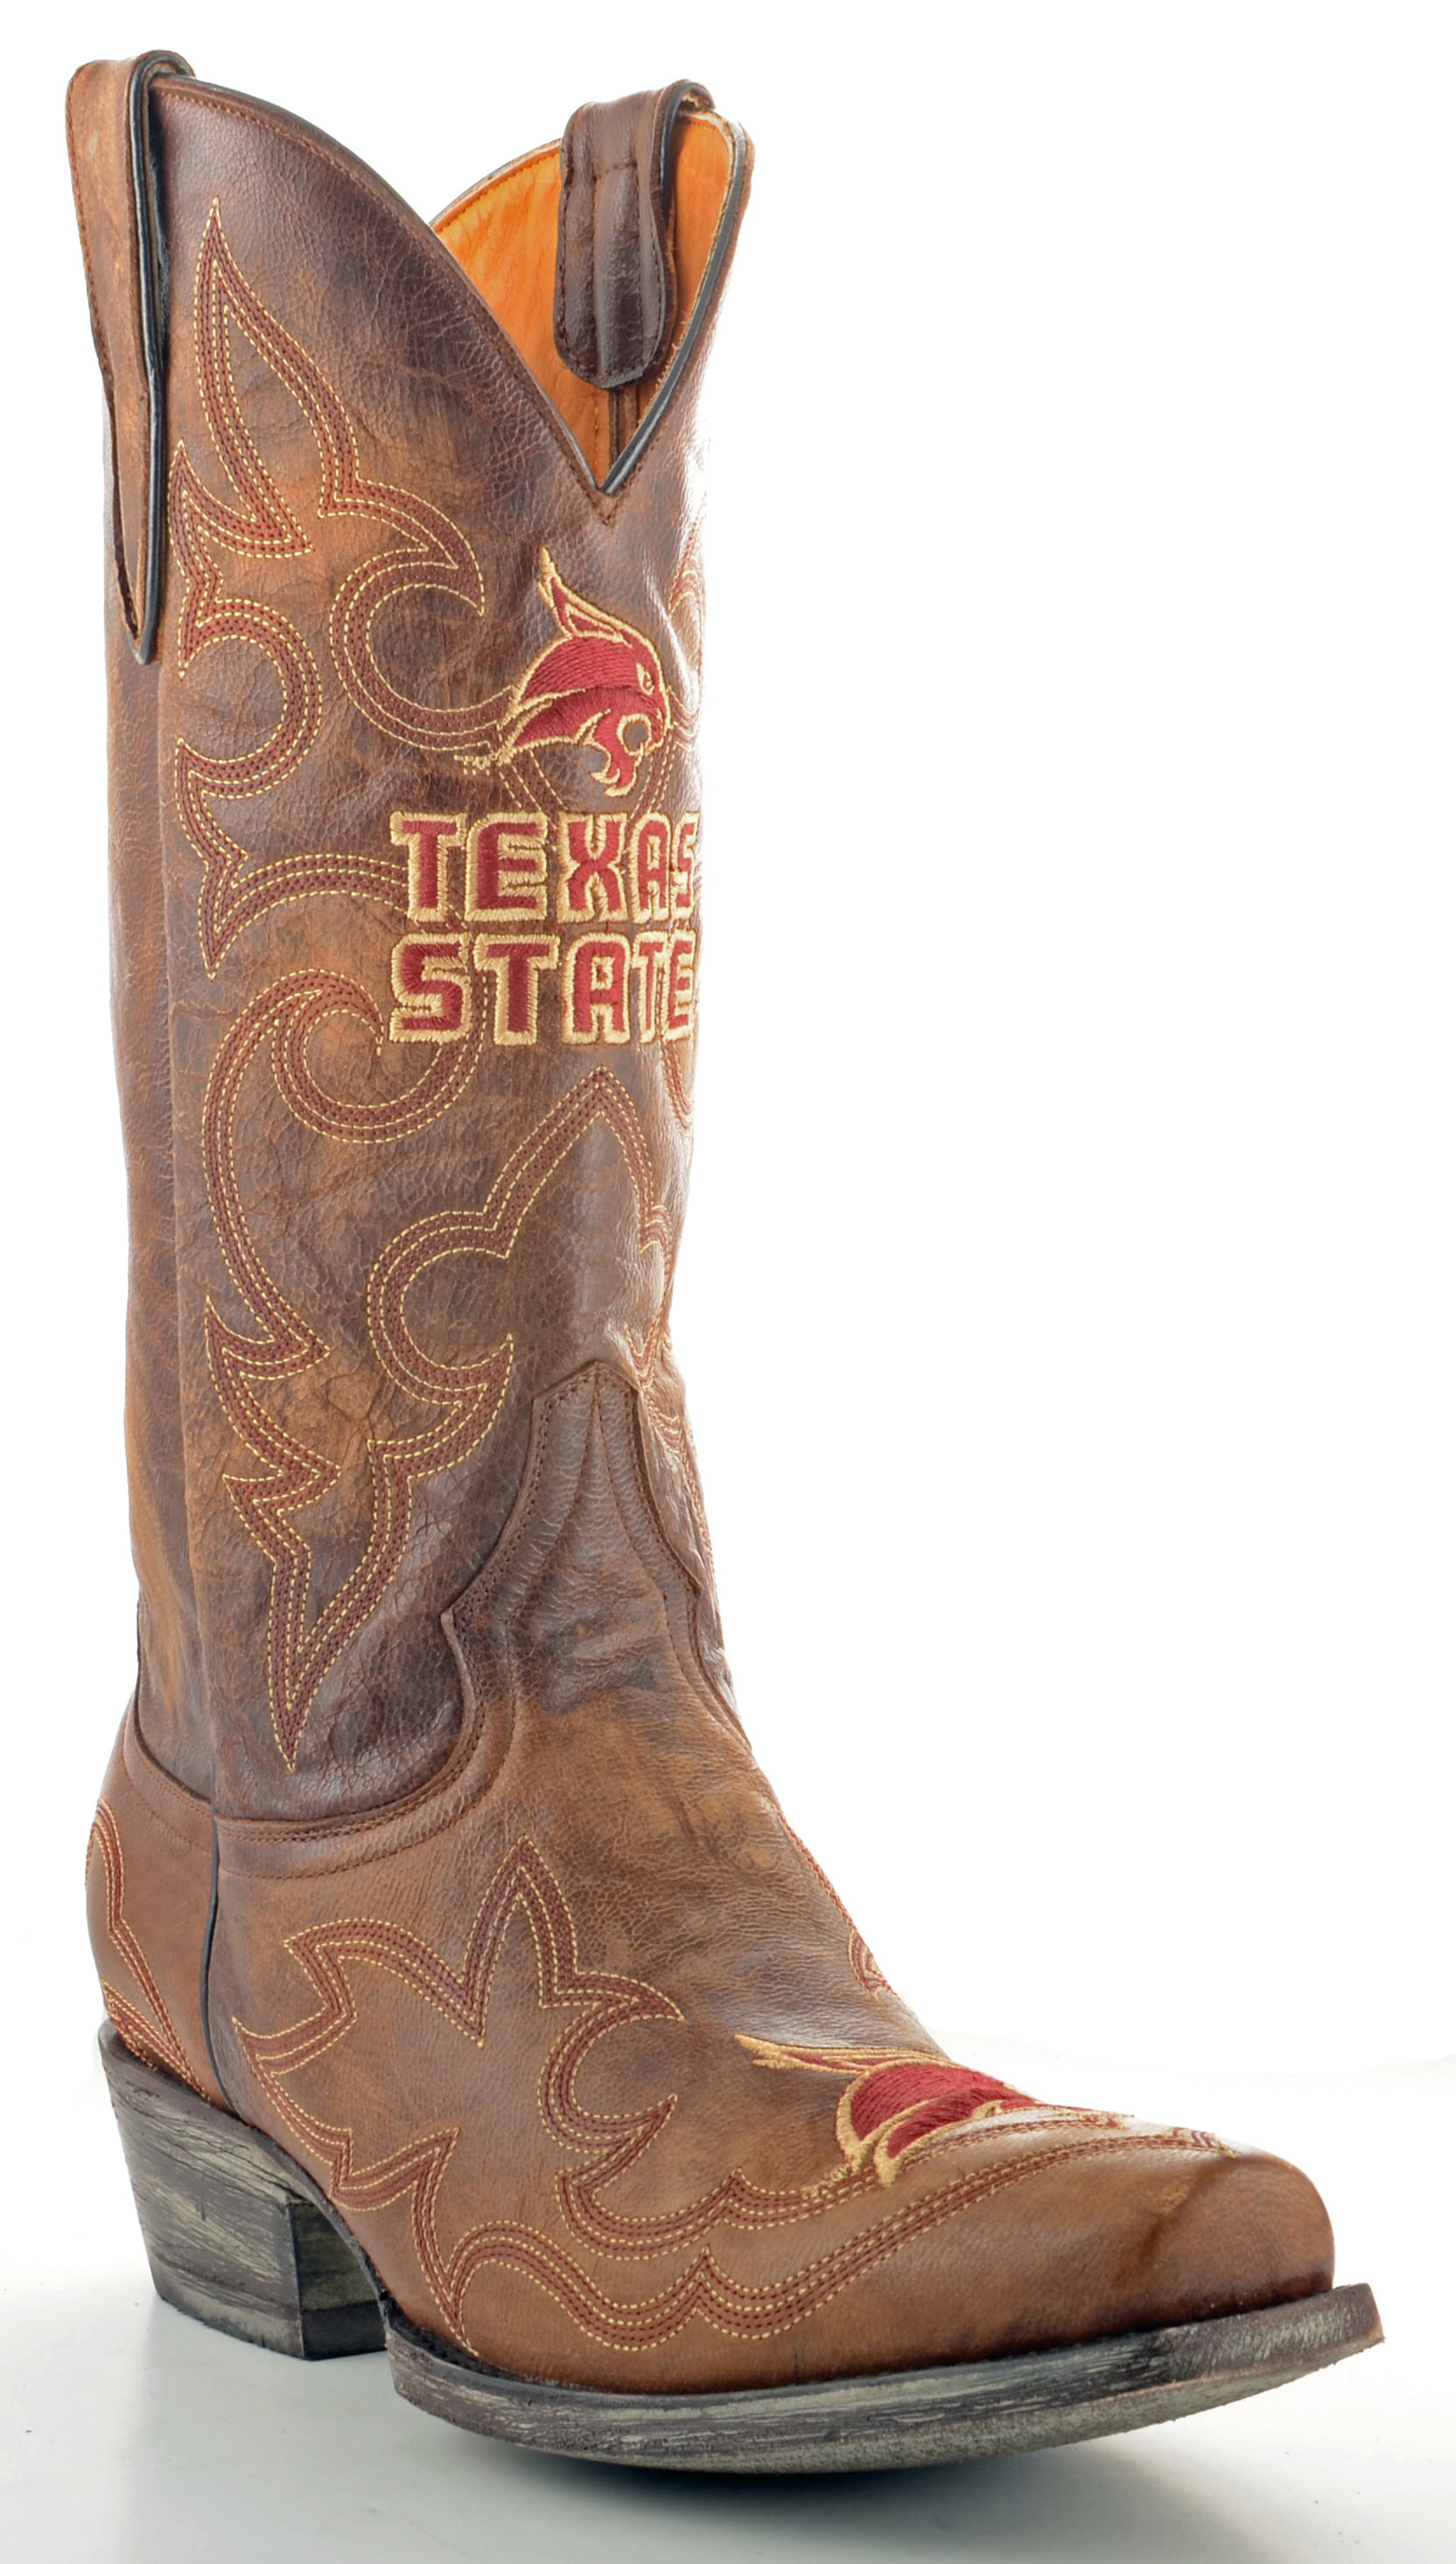 texas steer boots walmart